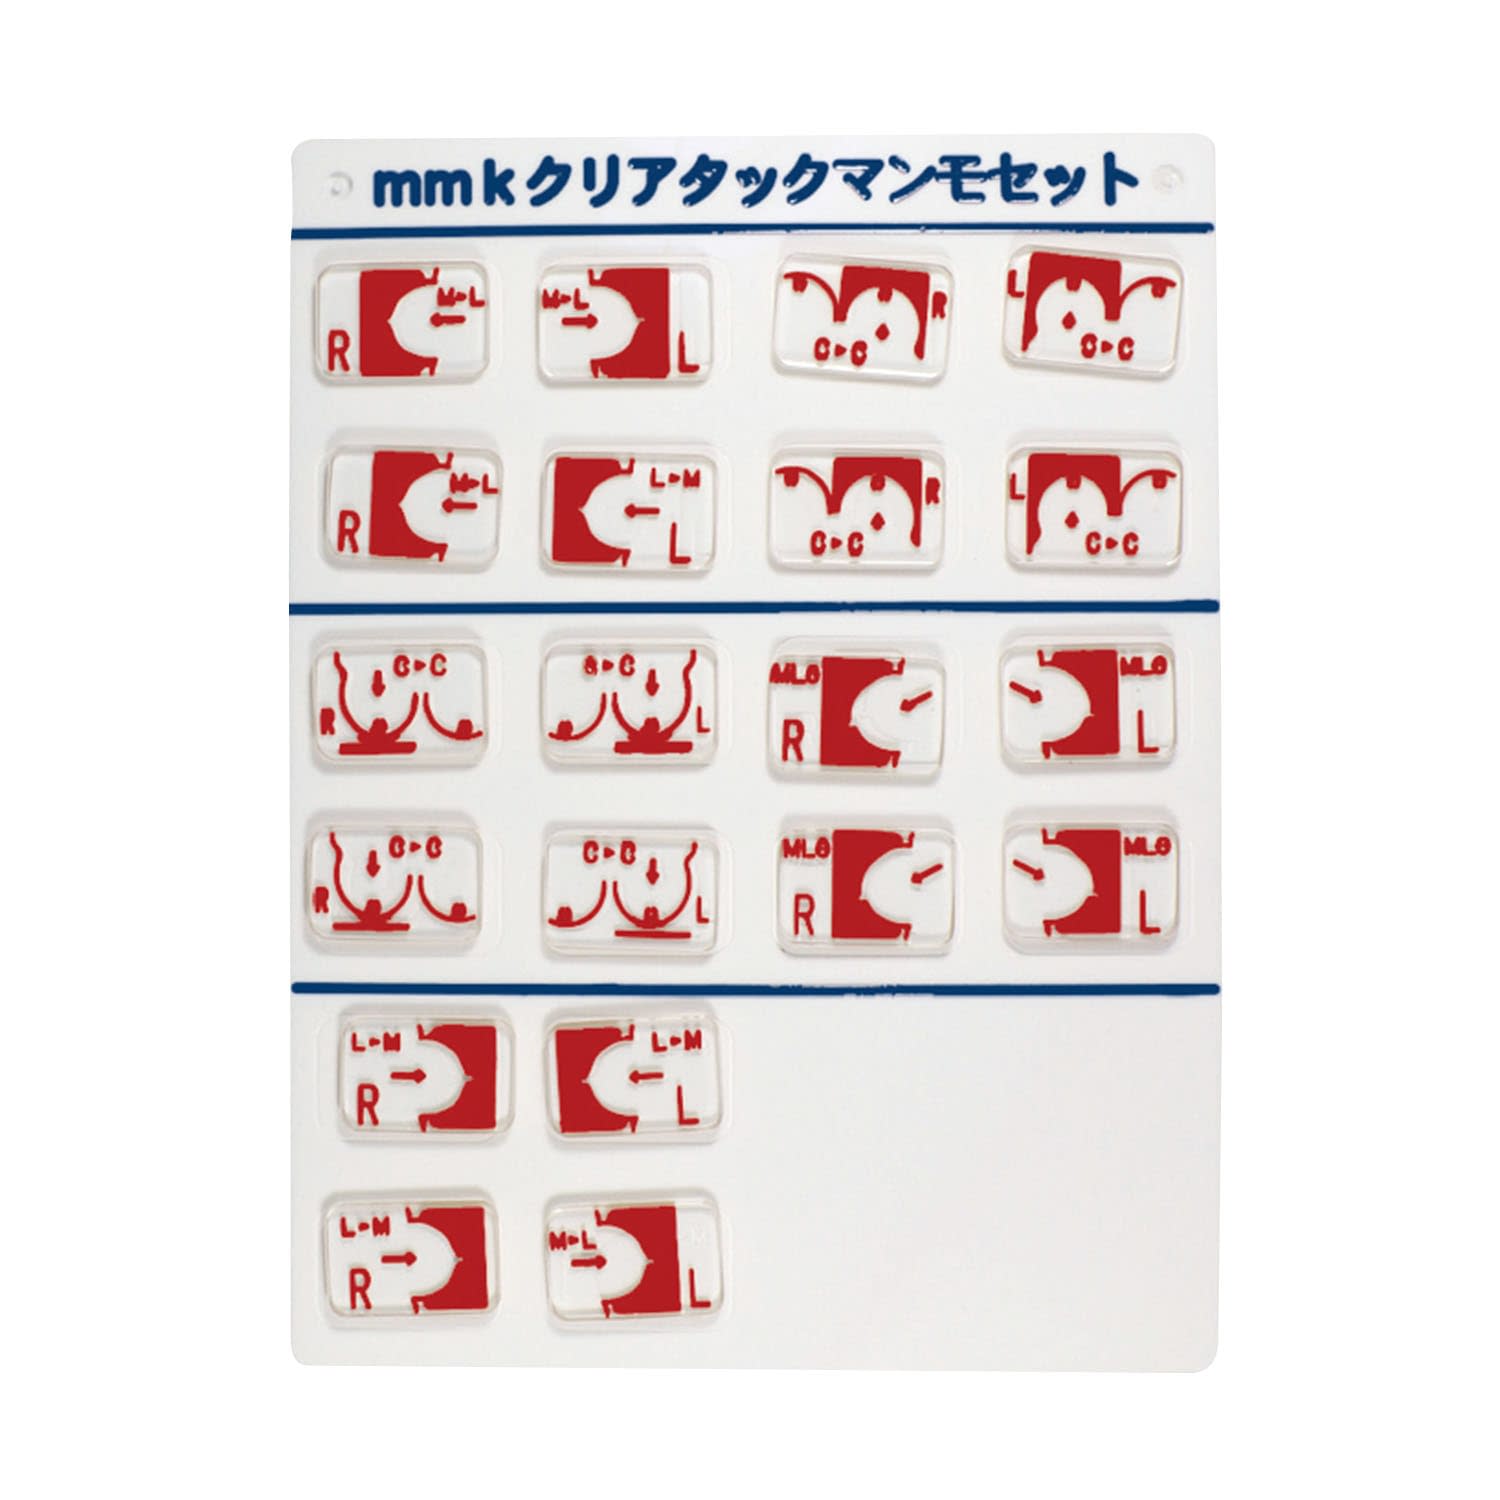 (24-6245-00)クリアタックマンモセット MK-CTMAMMOSET ｸﾘｱﾀｯｸﾏﾝﾓｾｯﾄ【1個単位】【2019年カタログ商品】